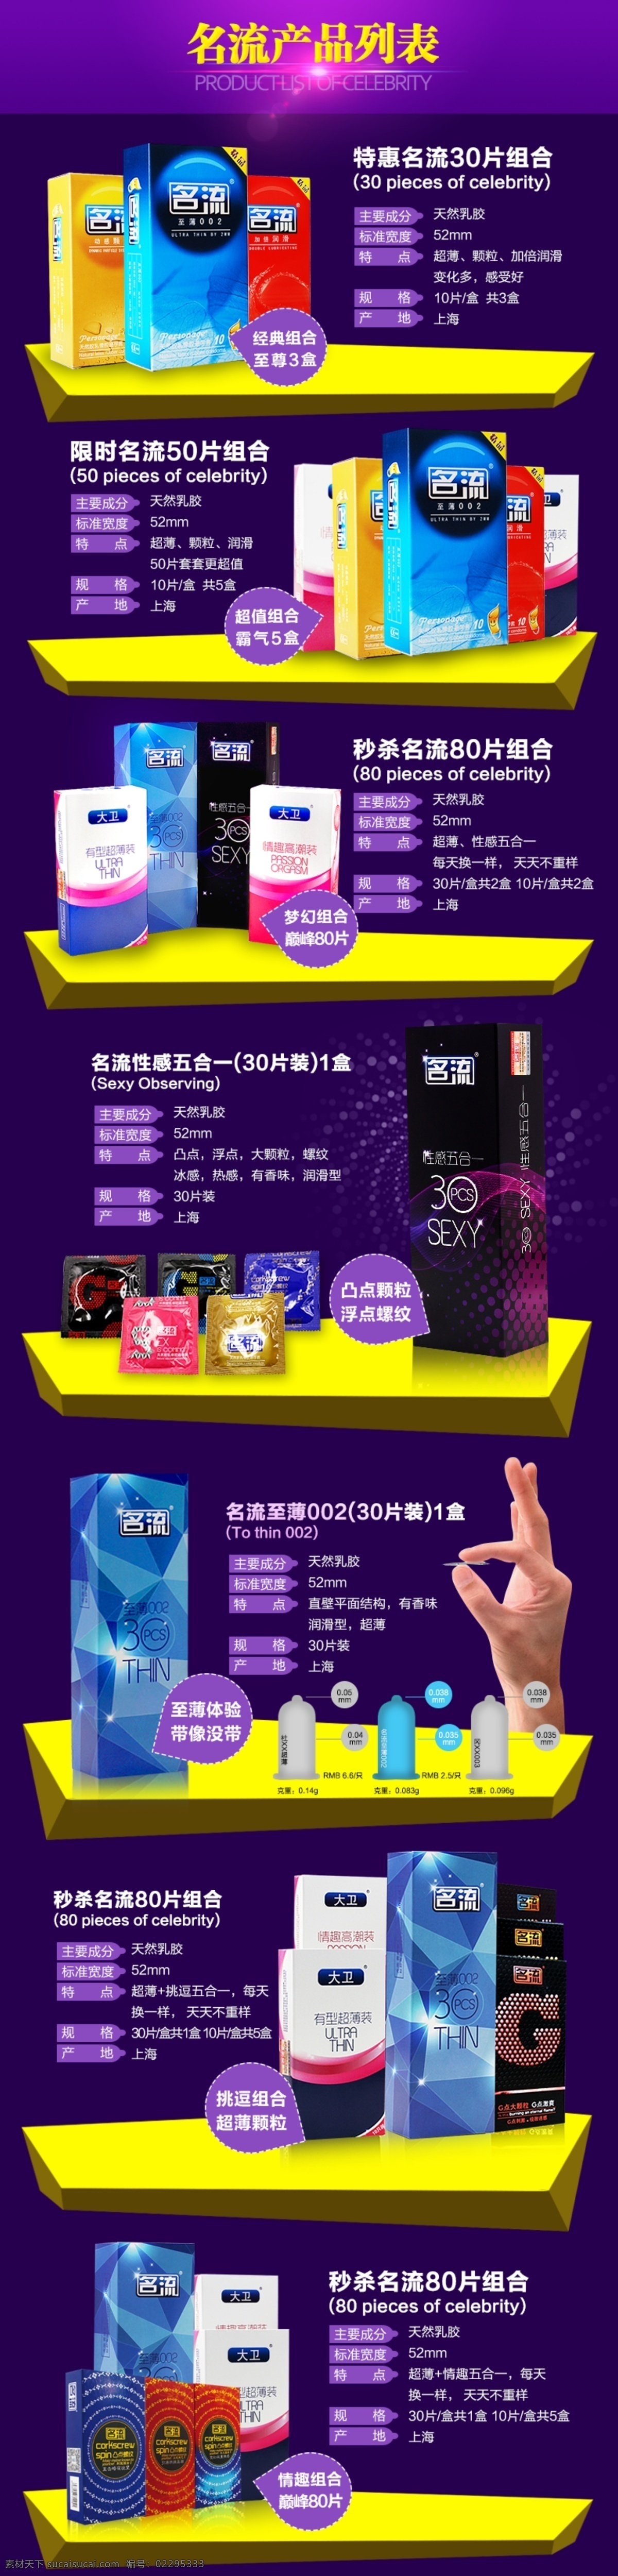 避孕套 产品列表 背景 广告 排版 淘宝 宣传 展示 海报 原创设计 原创淘宝设计